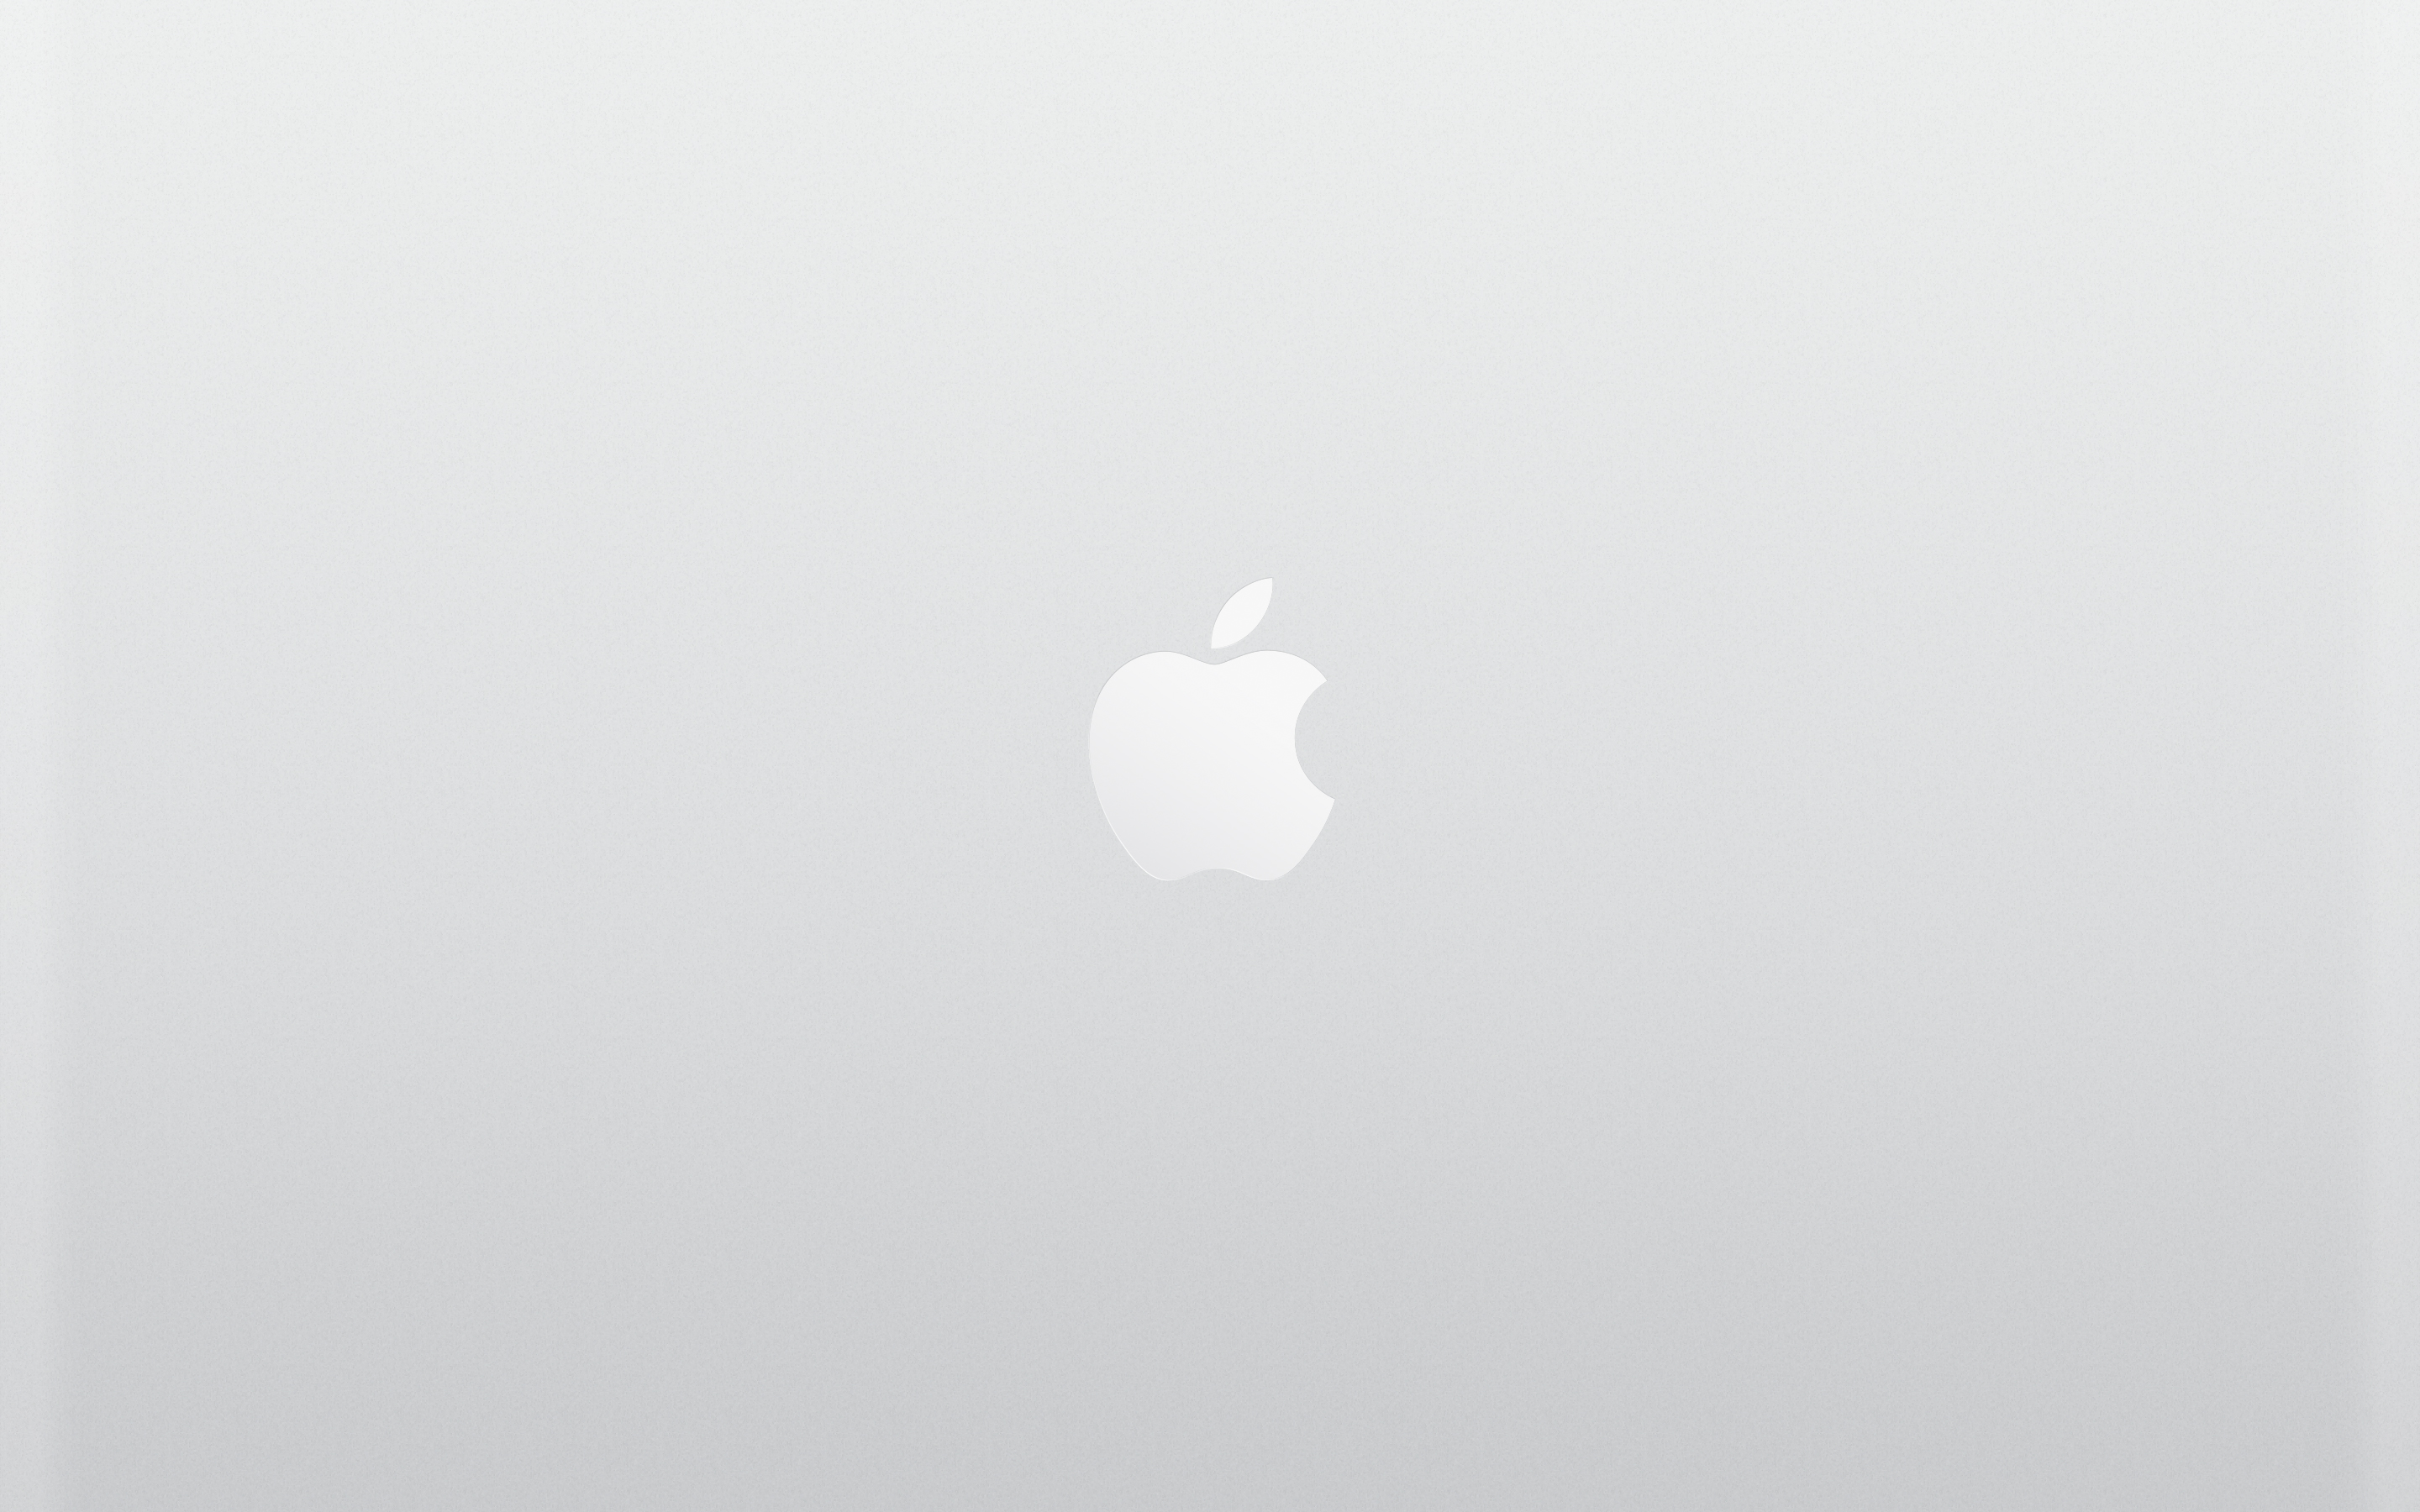 New Macbook Wallpaper For iPad iPhone And Desktop